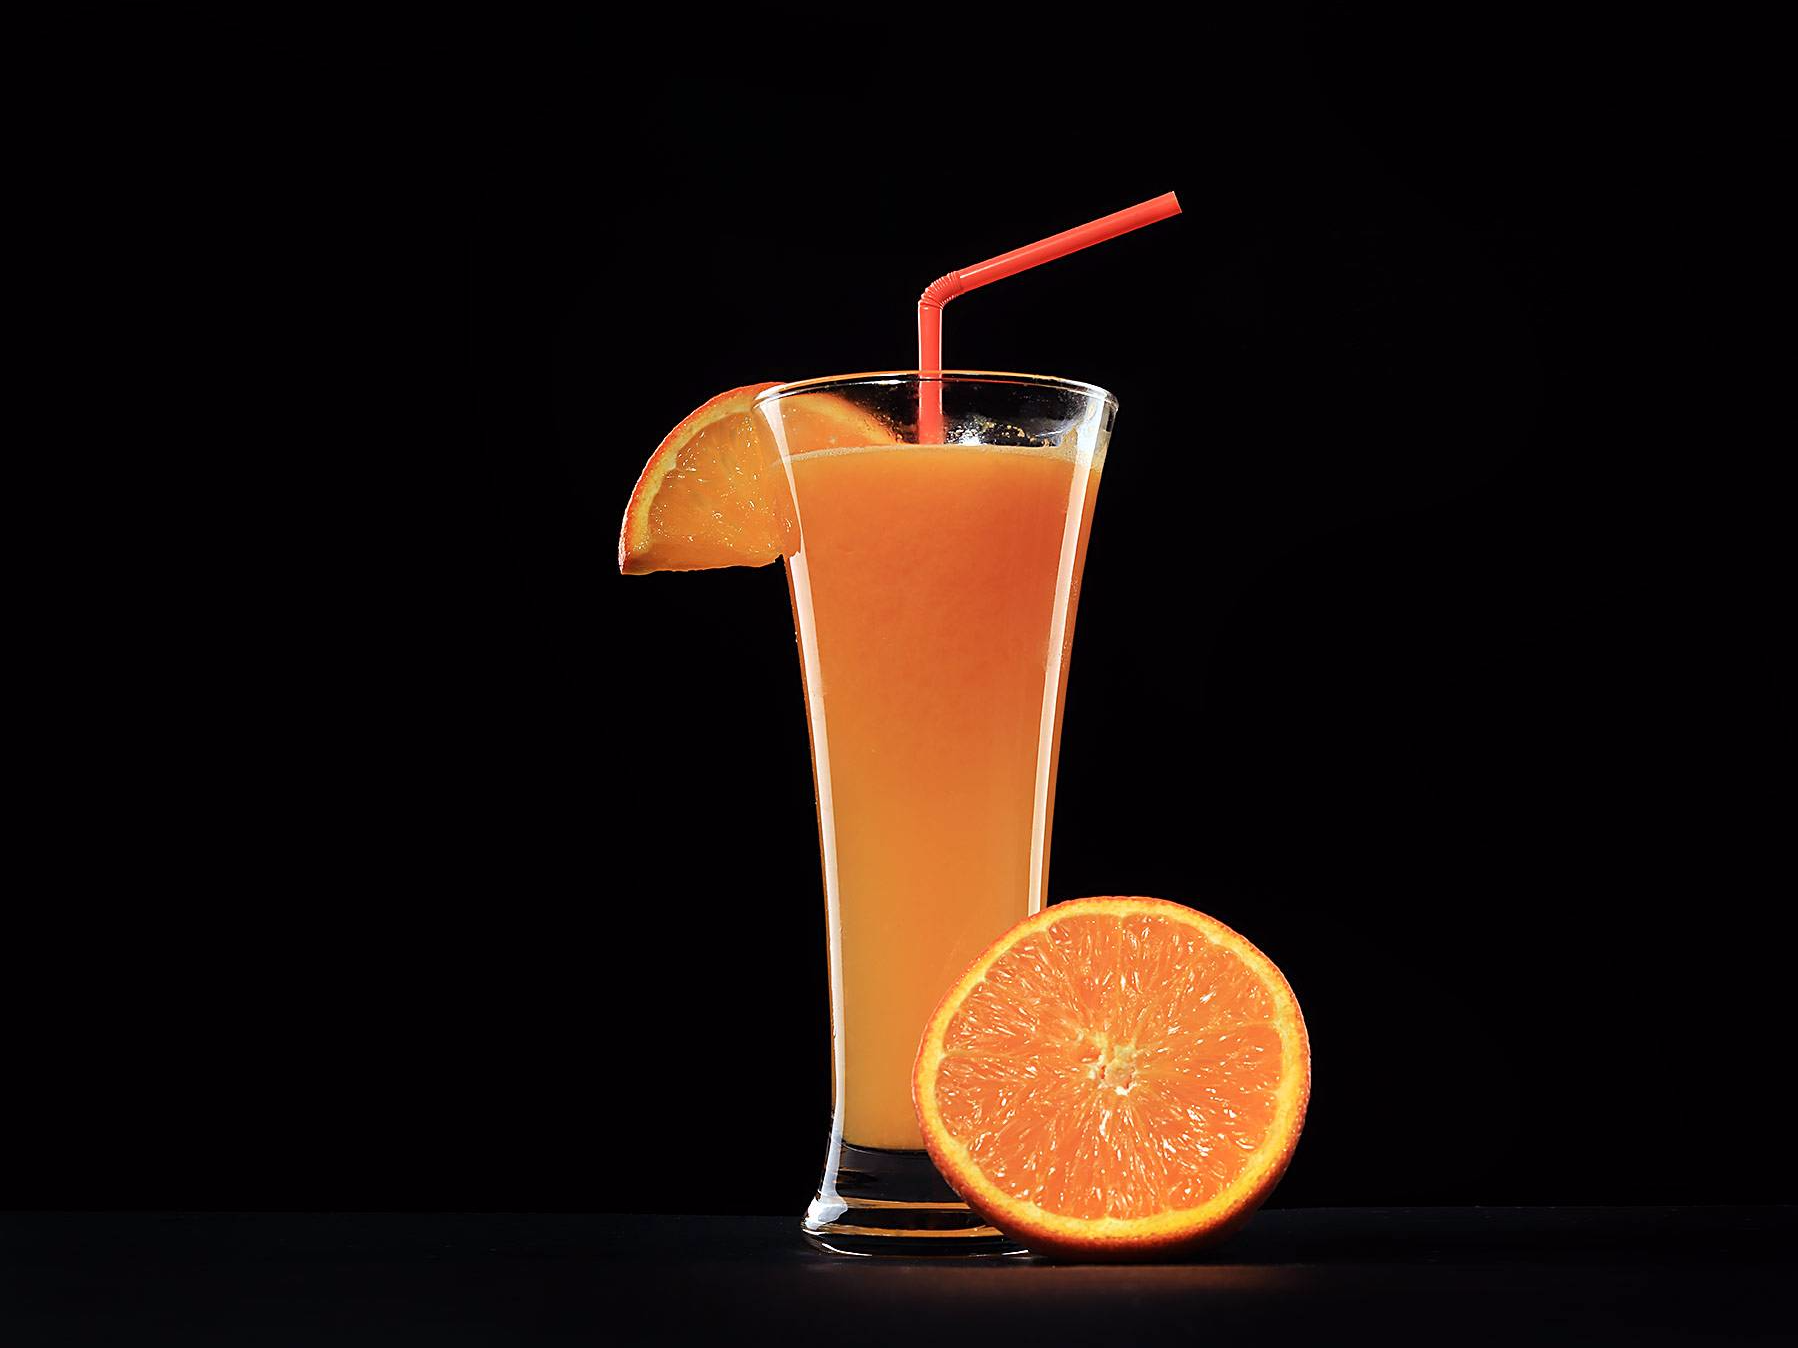 Fotografija piće - ceđeni sok, fotografisano u foto studiju